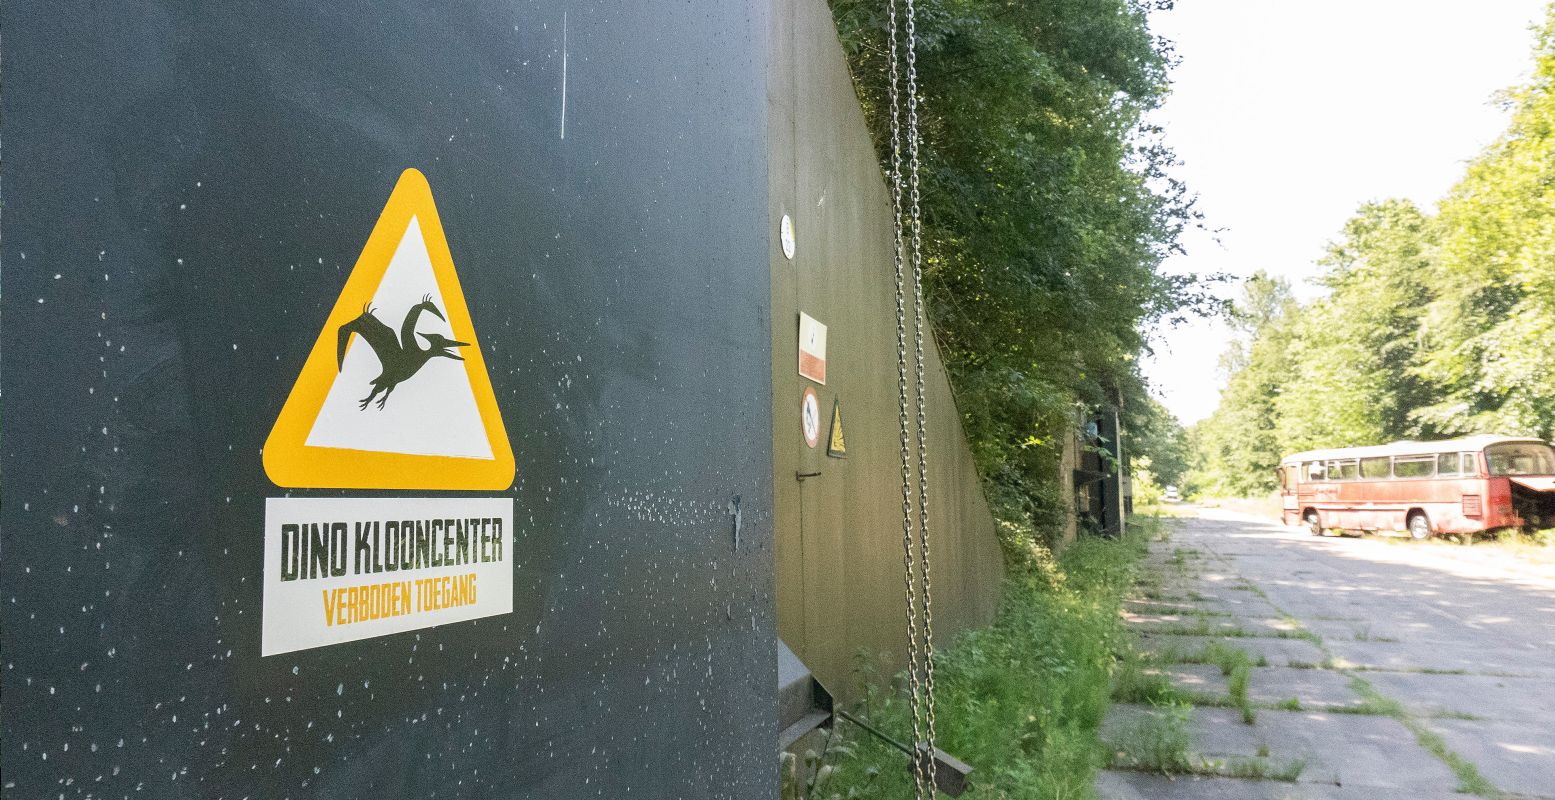 Ontdek allerlei geheimen en dino's in de bunkerstrip van Vliegveld Twente. Foto: De Dino Fabriek